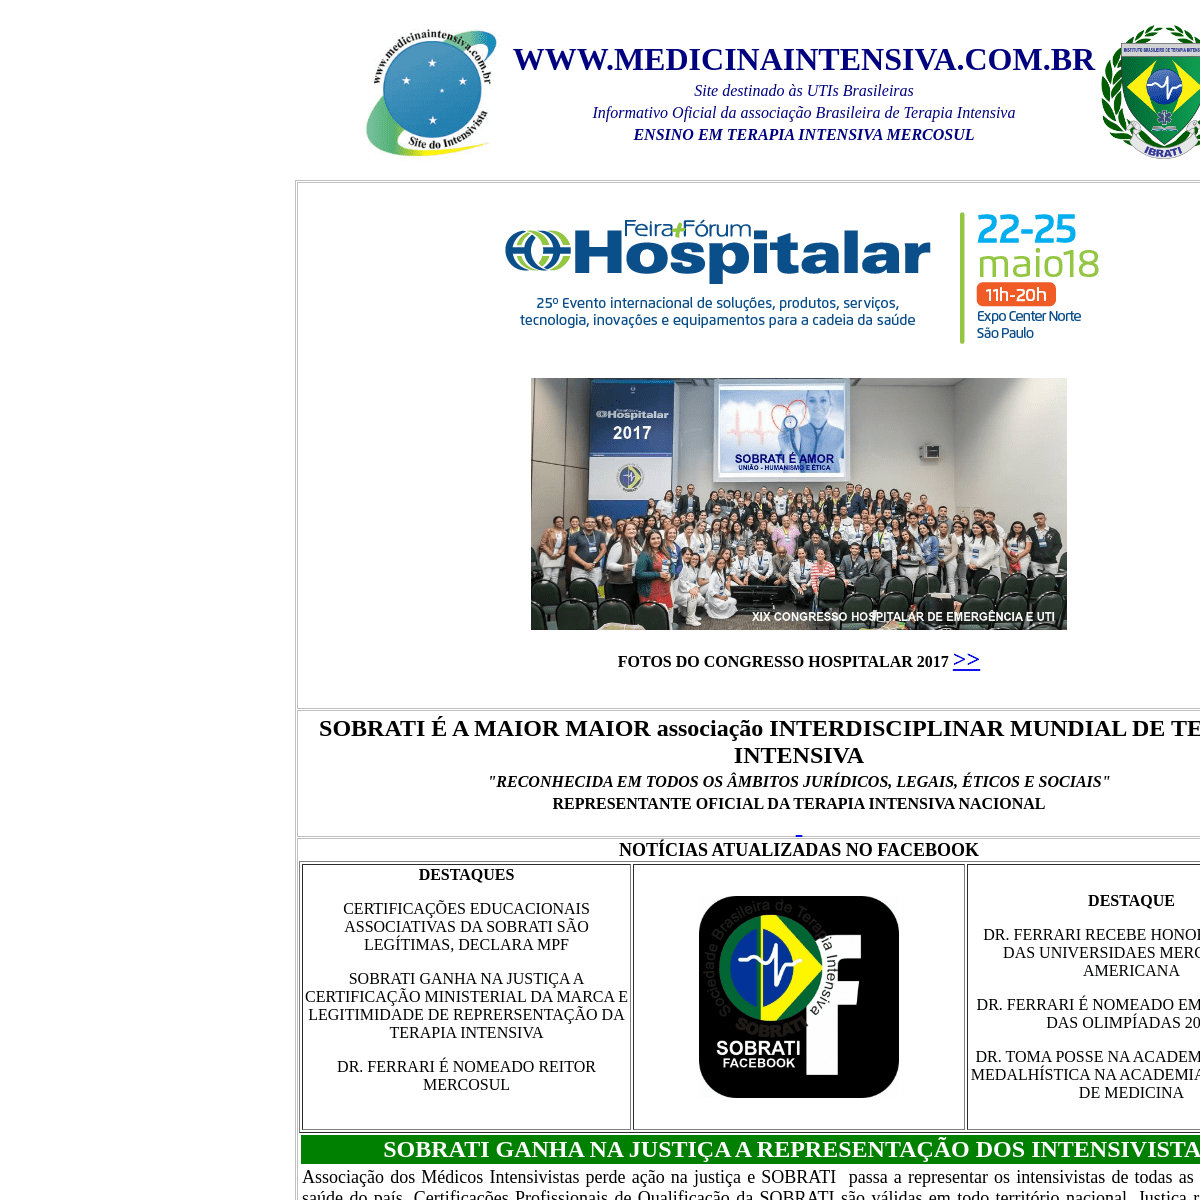 A complete backup of medicinaintensiva.com.br